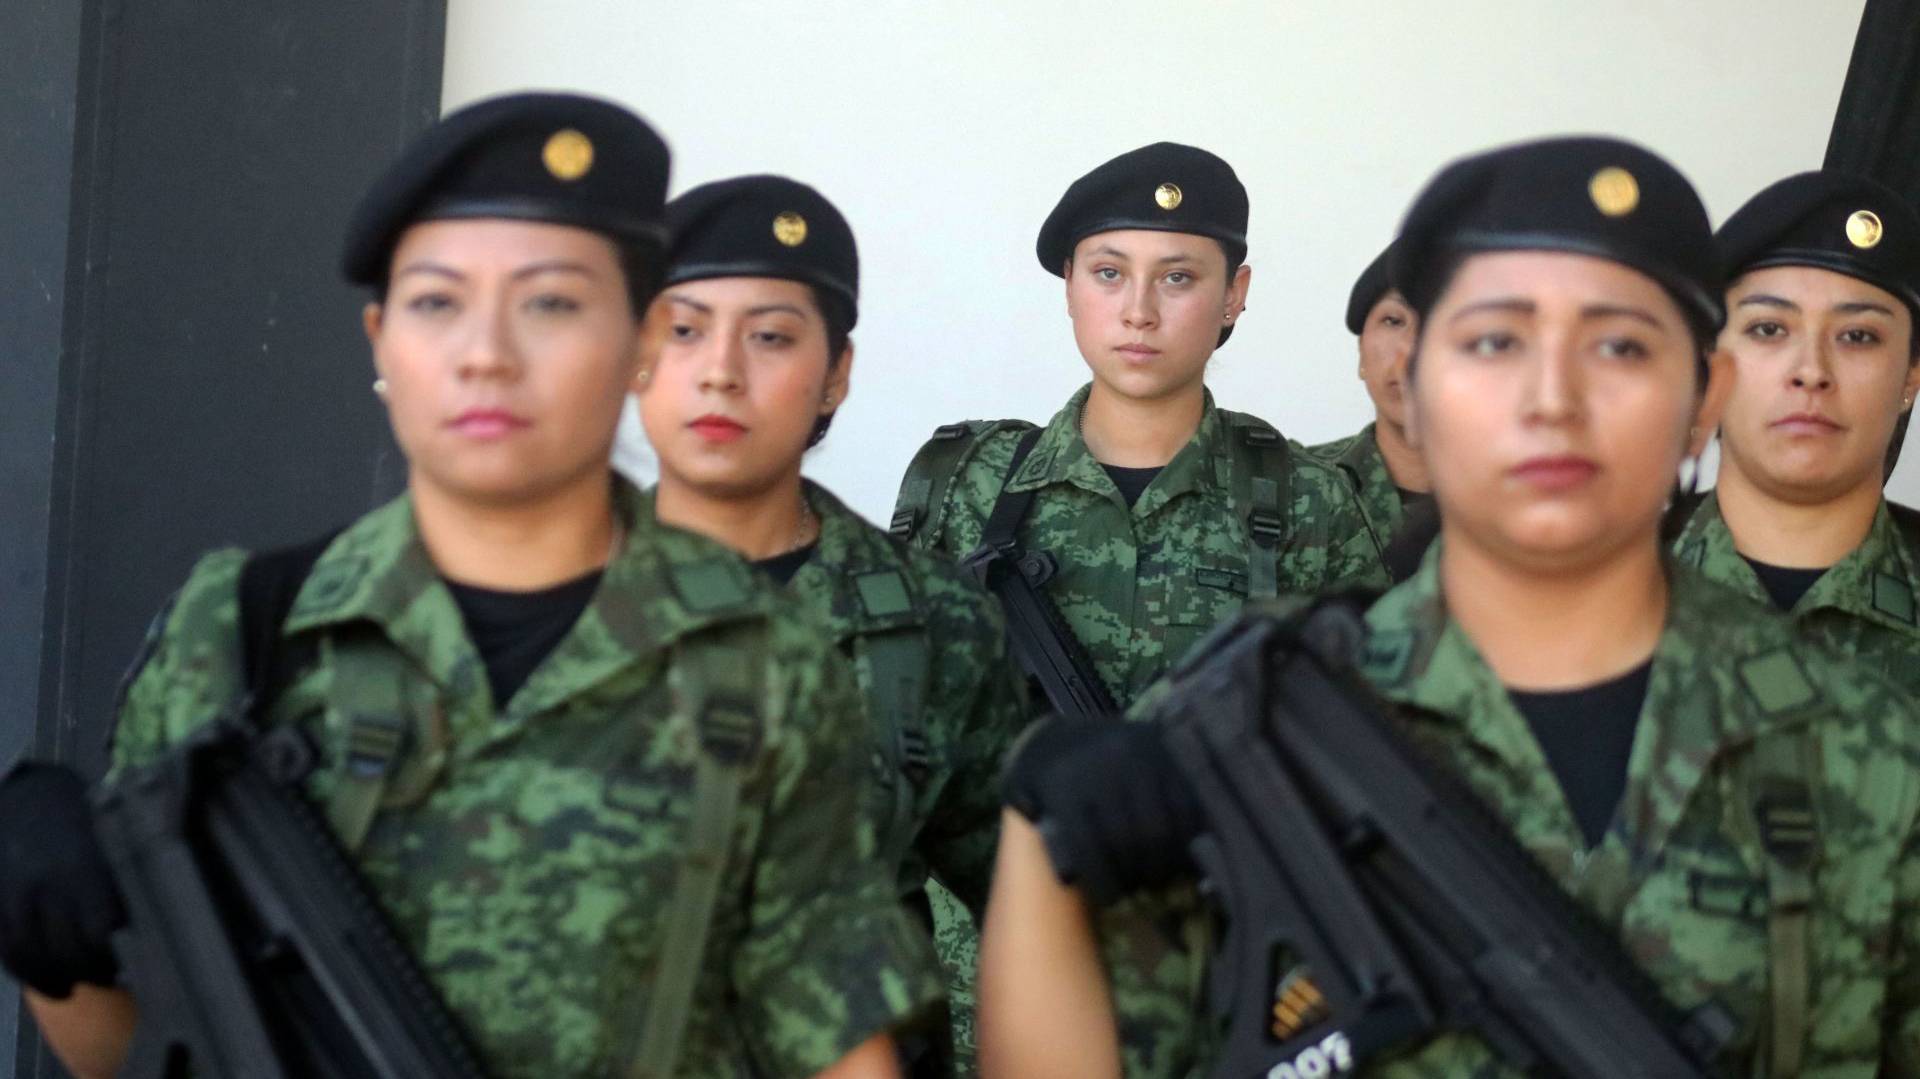 EEUU promueve en México la inclusión de mujeres en fuerzas de seguridad